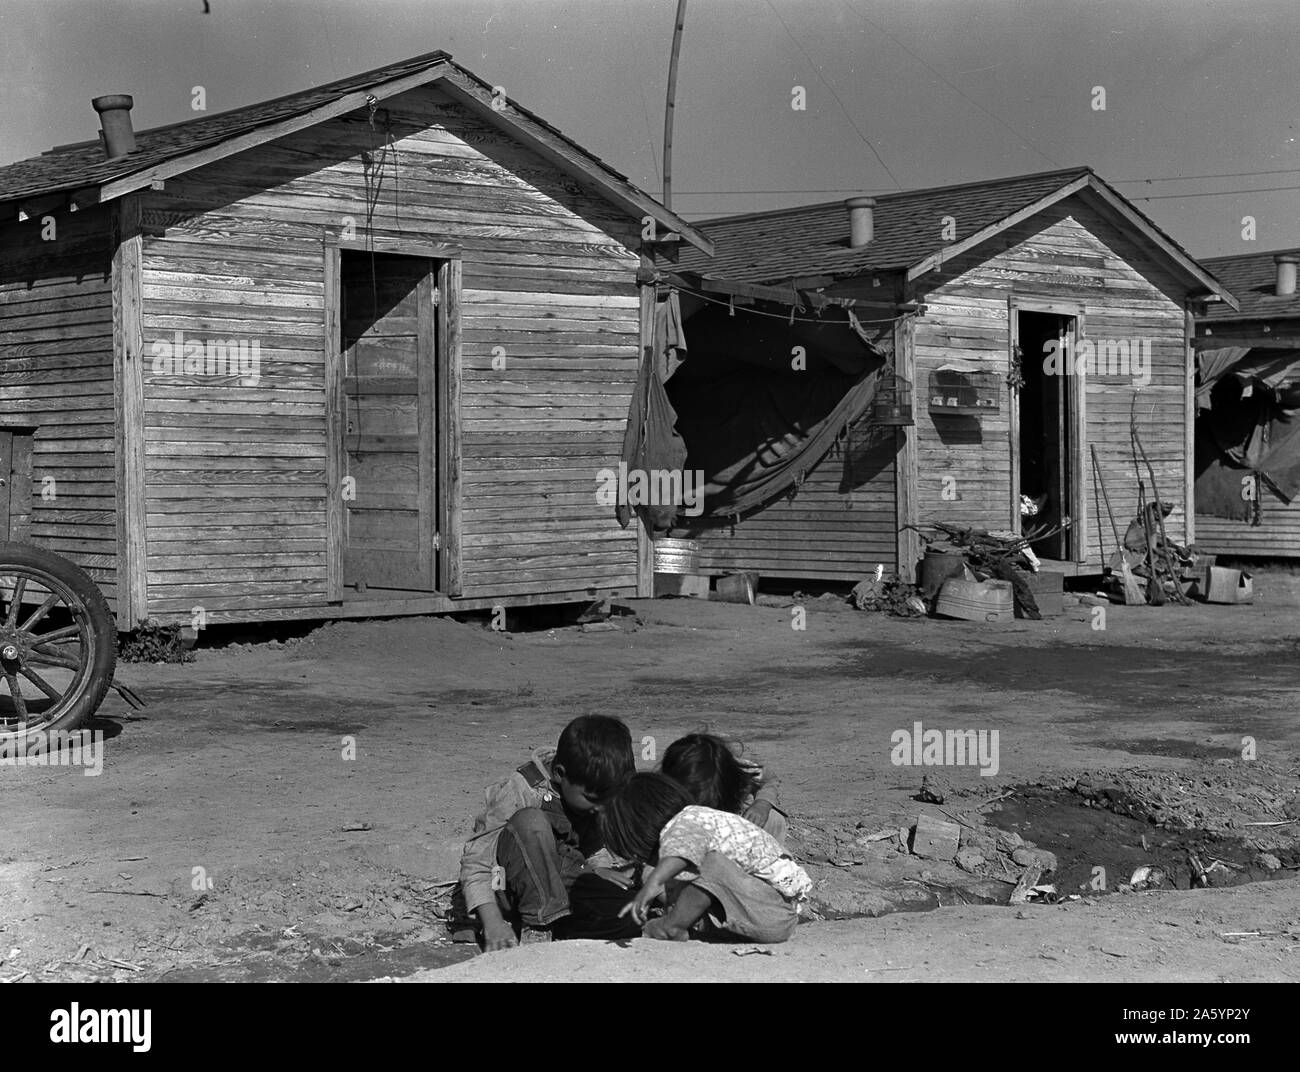 Le chômage, l'immigration, de poussière, de chômeurs, de l'économie, grande dépression, USA, années 1930, le logement Banque D'Images